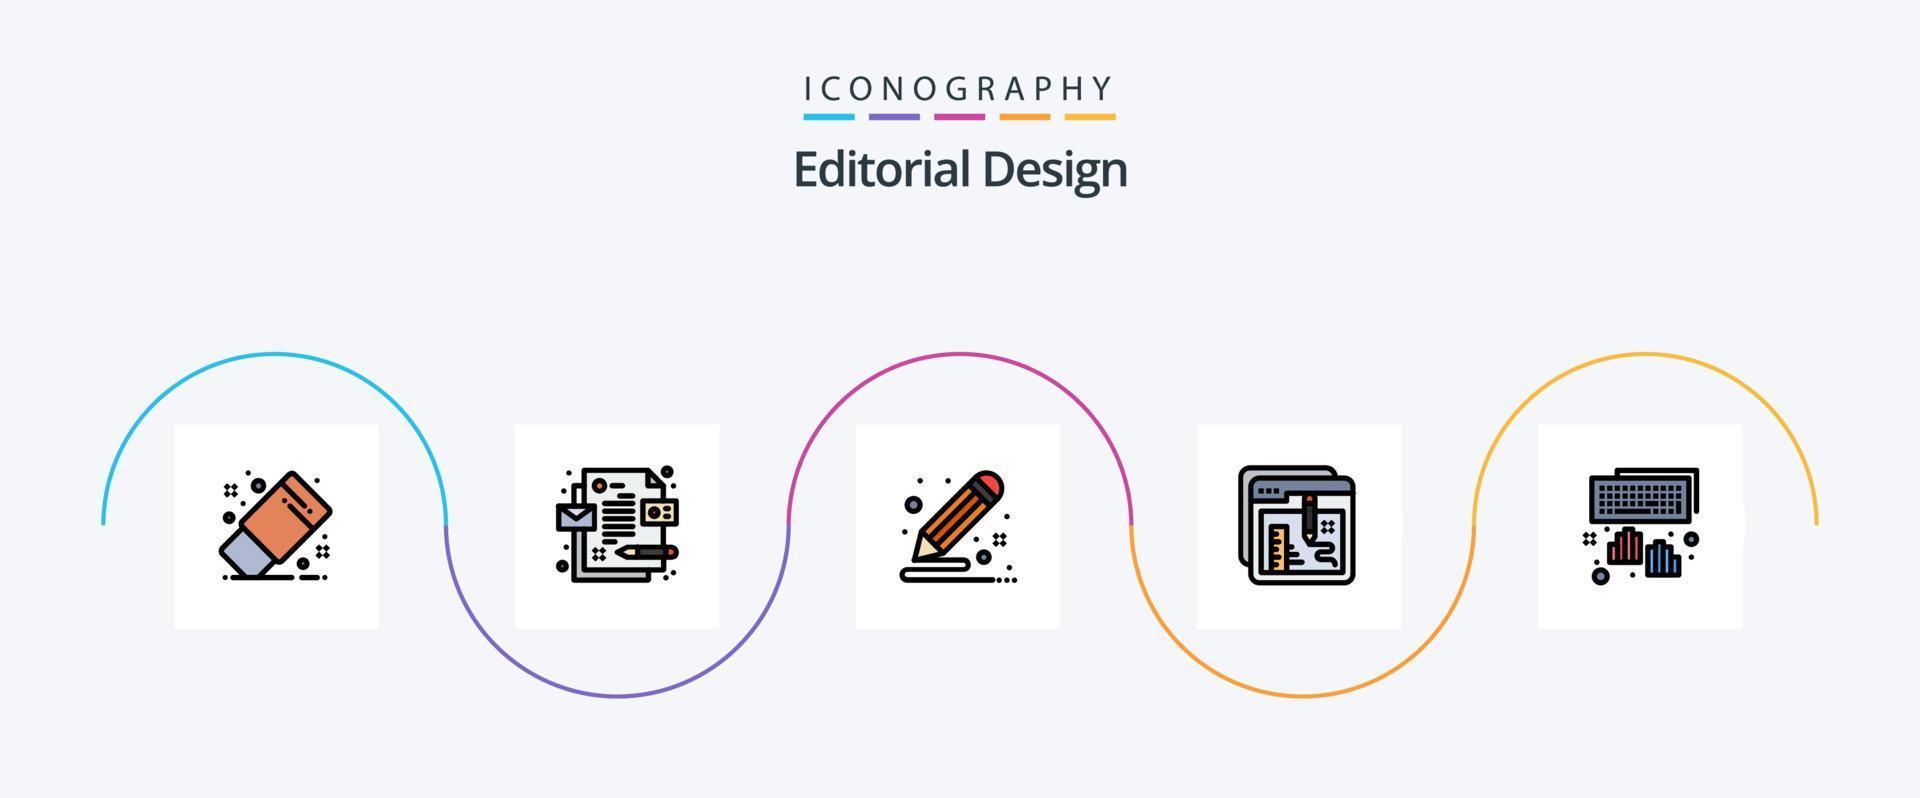 linha de design editorial cheia de pacote de 5 ícones planos, incluindo mãos. Educação. criativo. documento. navegador vetor